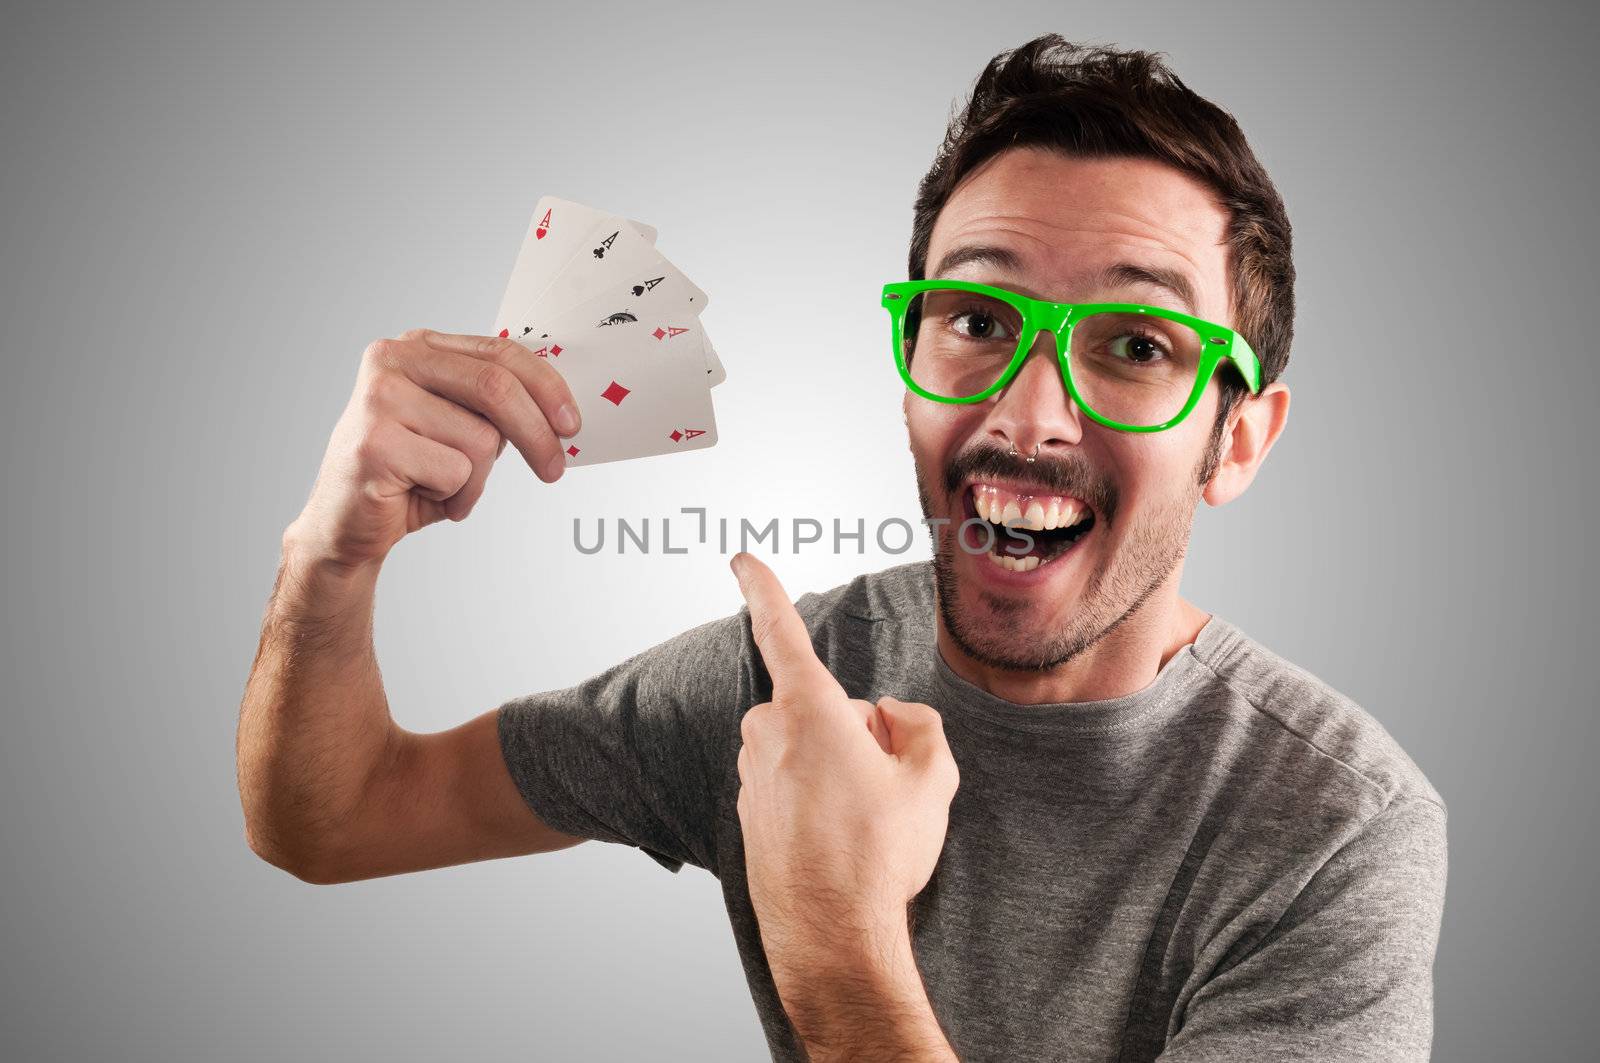 winner guy holding poker cards by peus